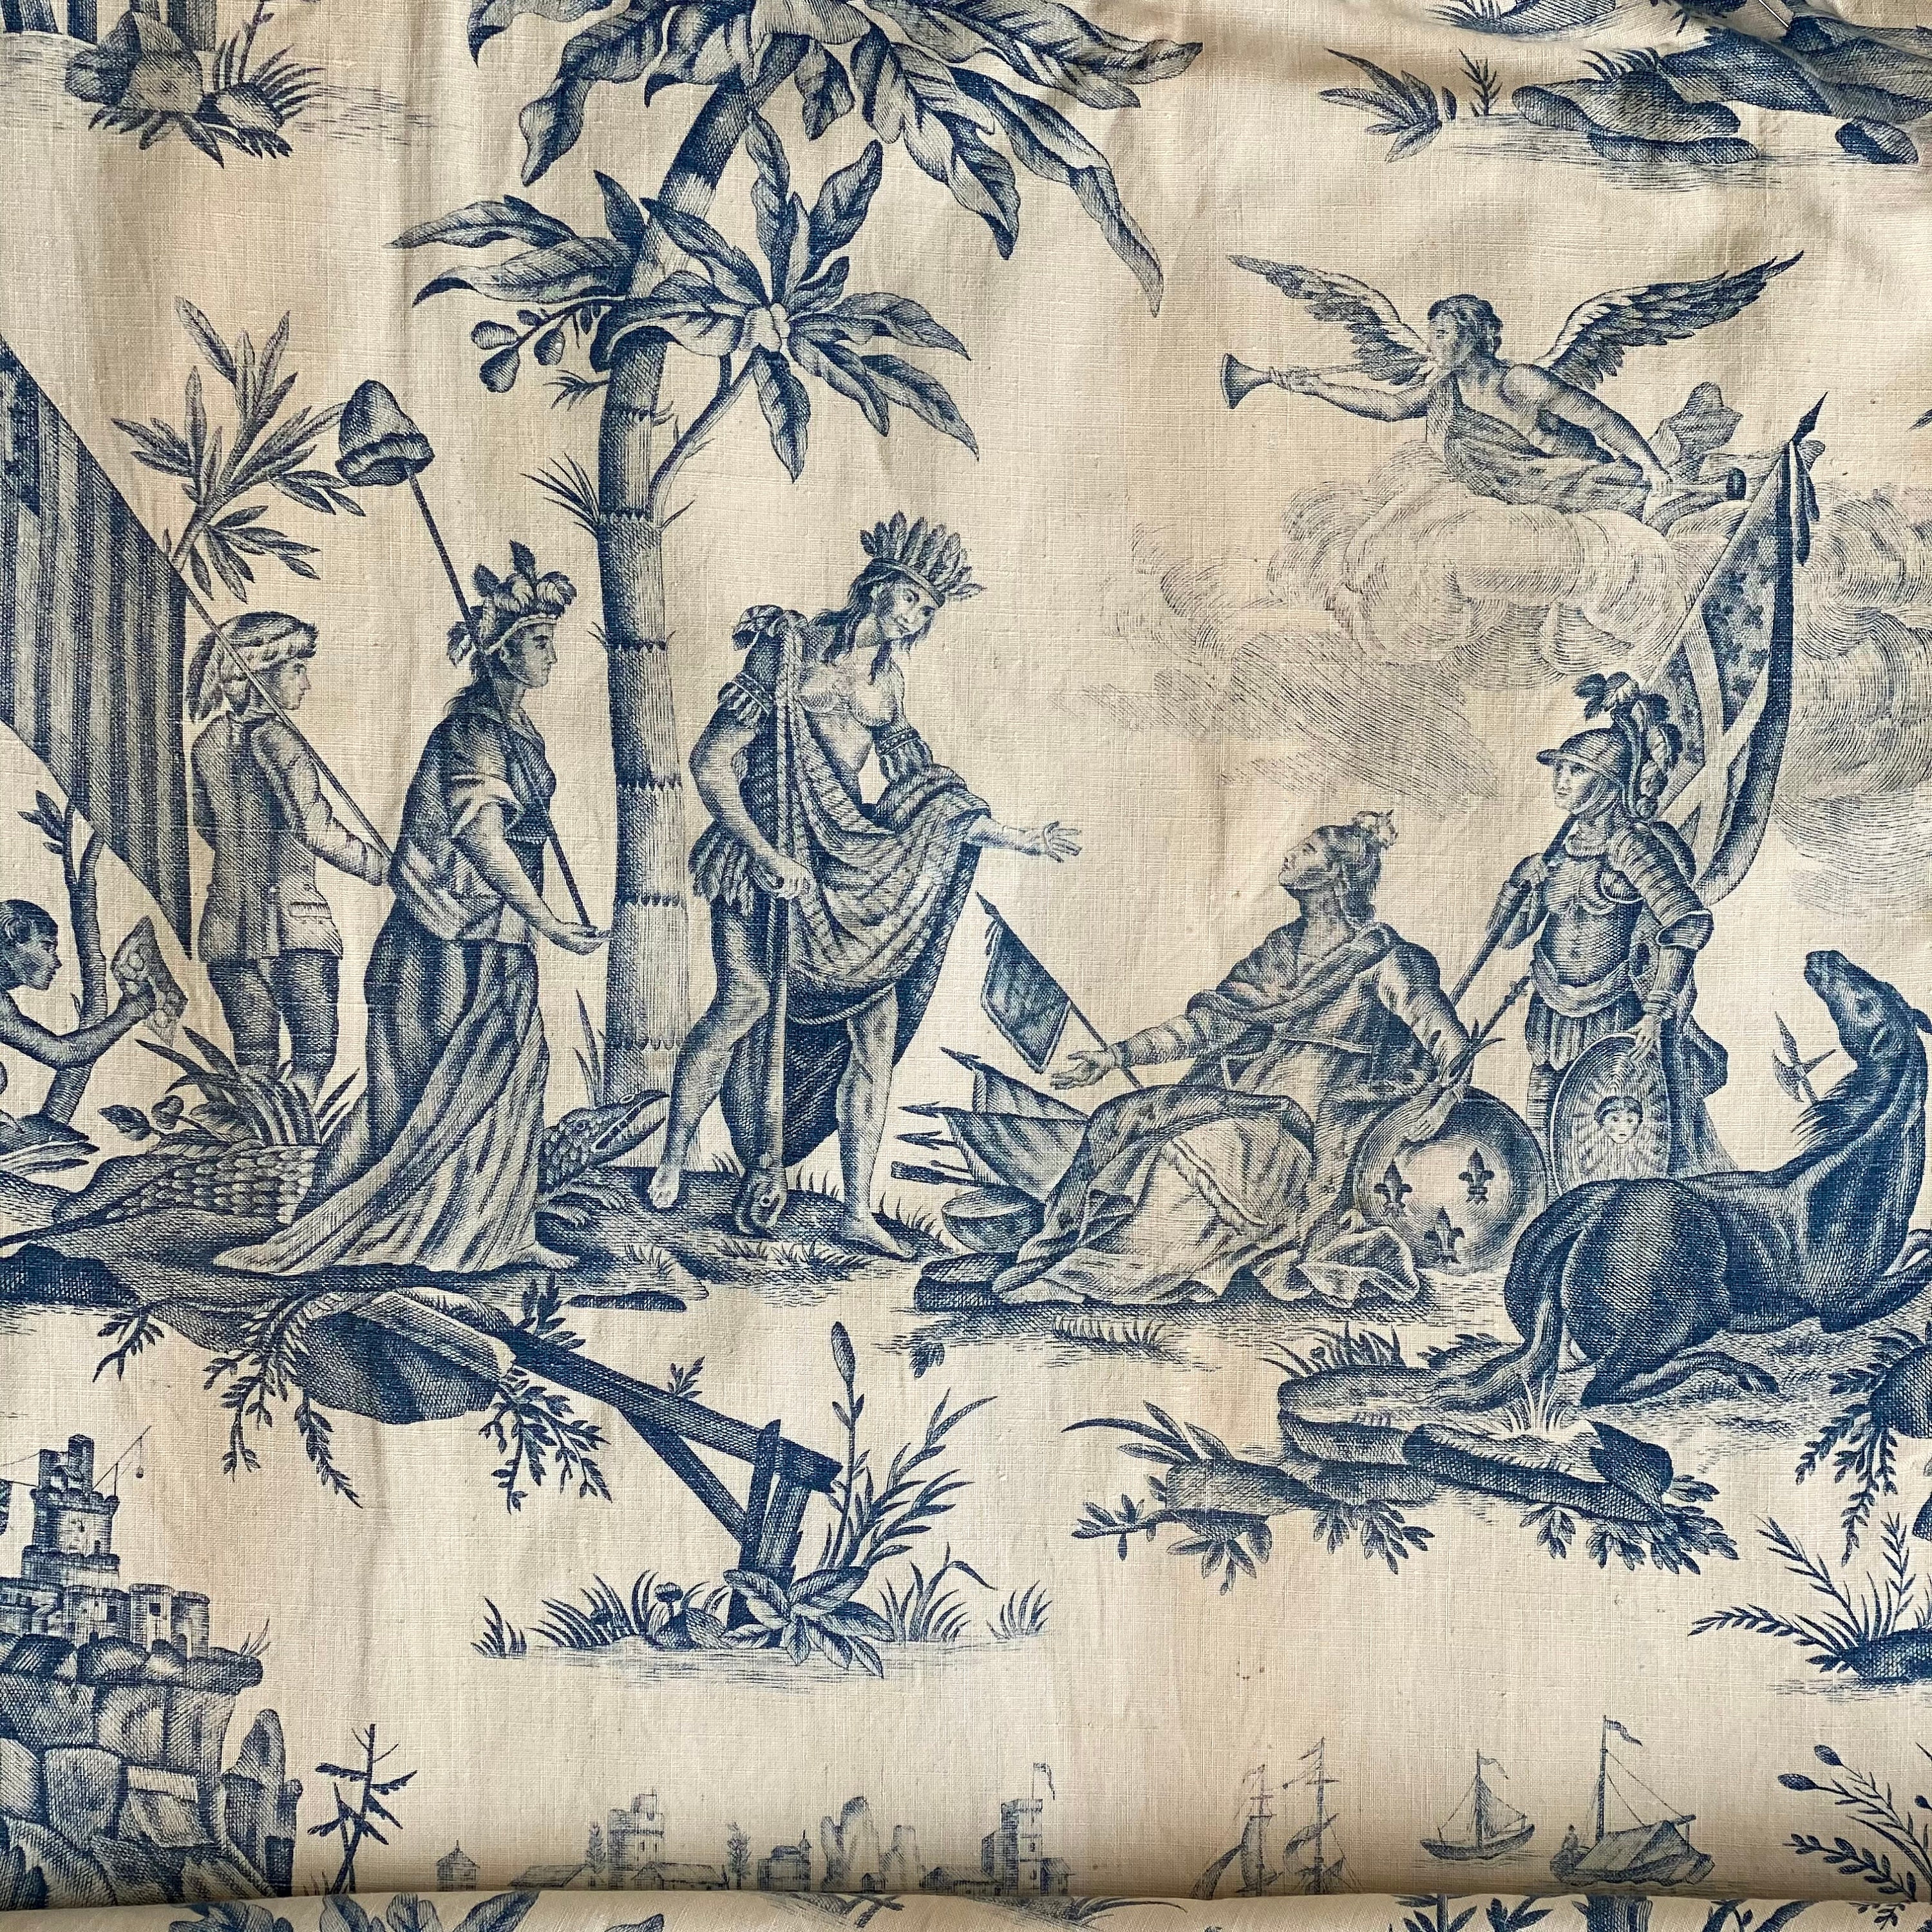 Historical Textile Antique Toile De Jouy Hommage De L' 